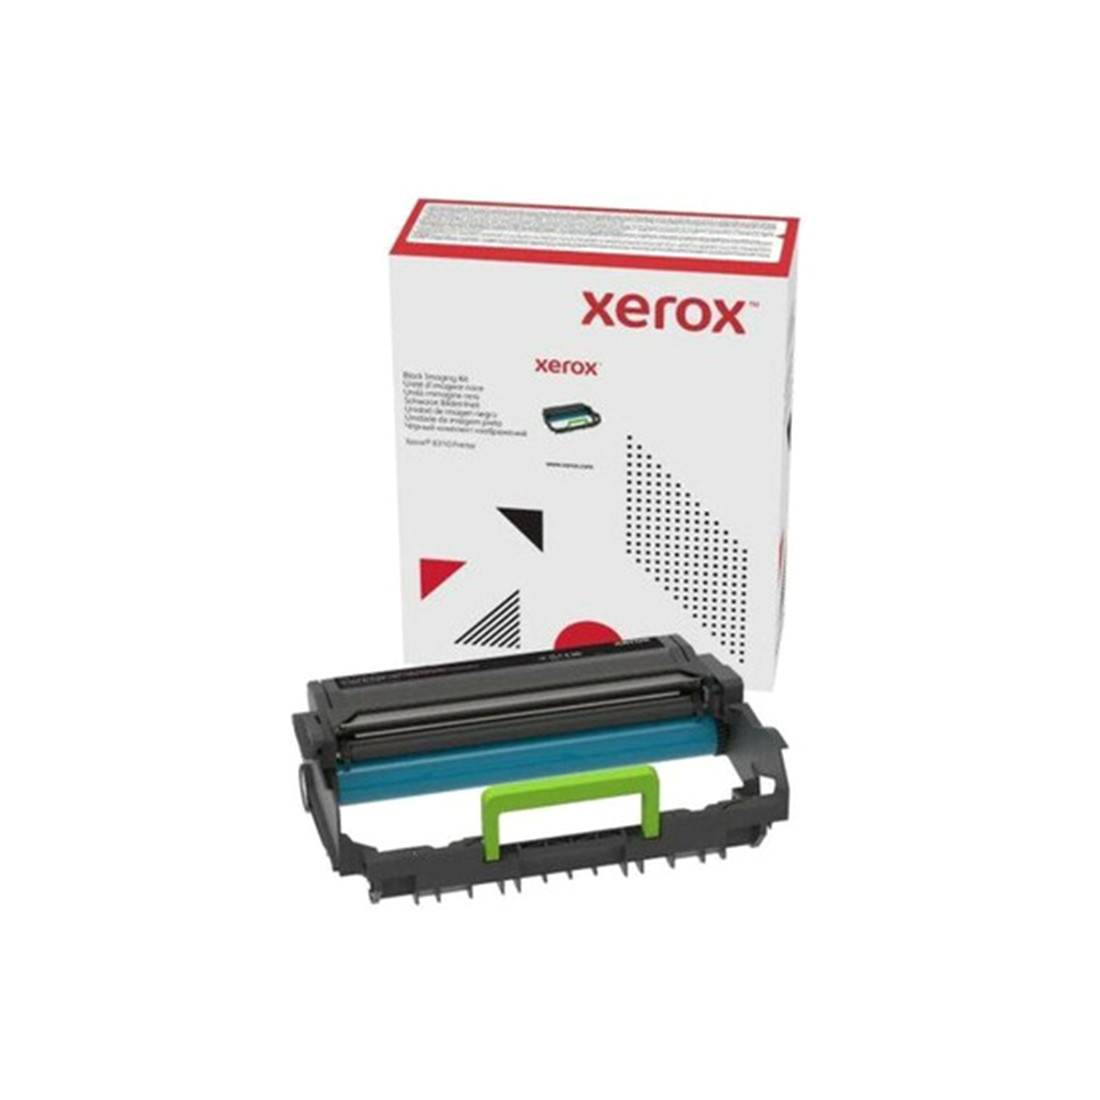 Принт-картридж  Xerox   013R00690  40K стр. А4 Для Принтера B310DNi